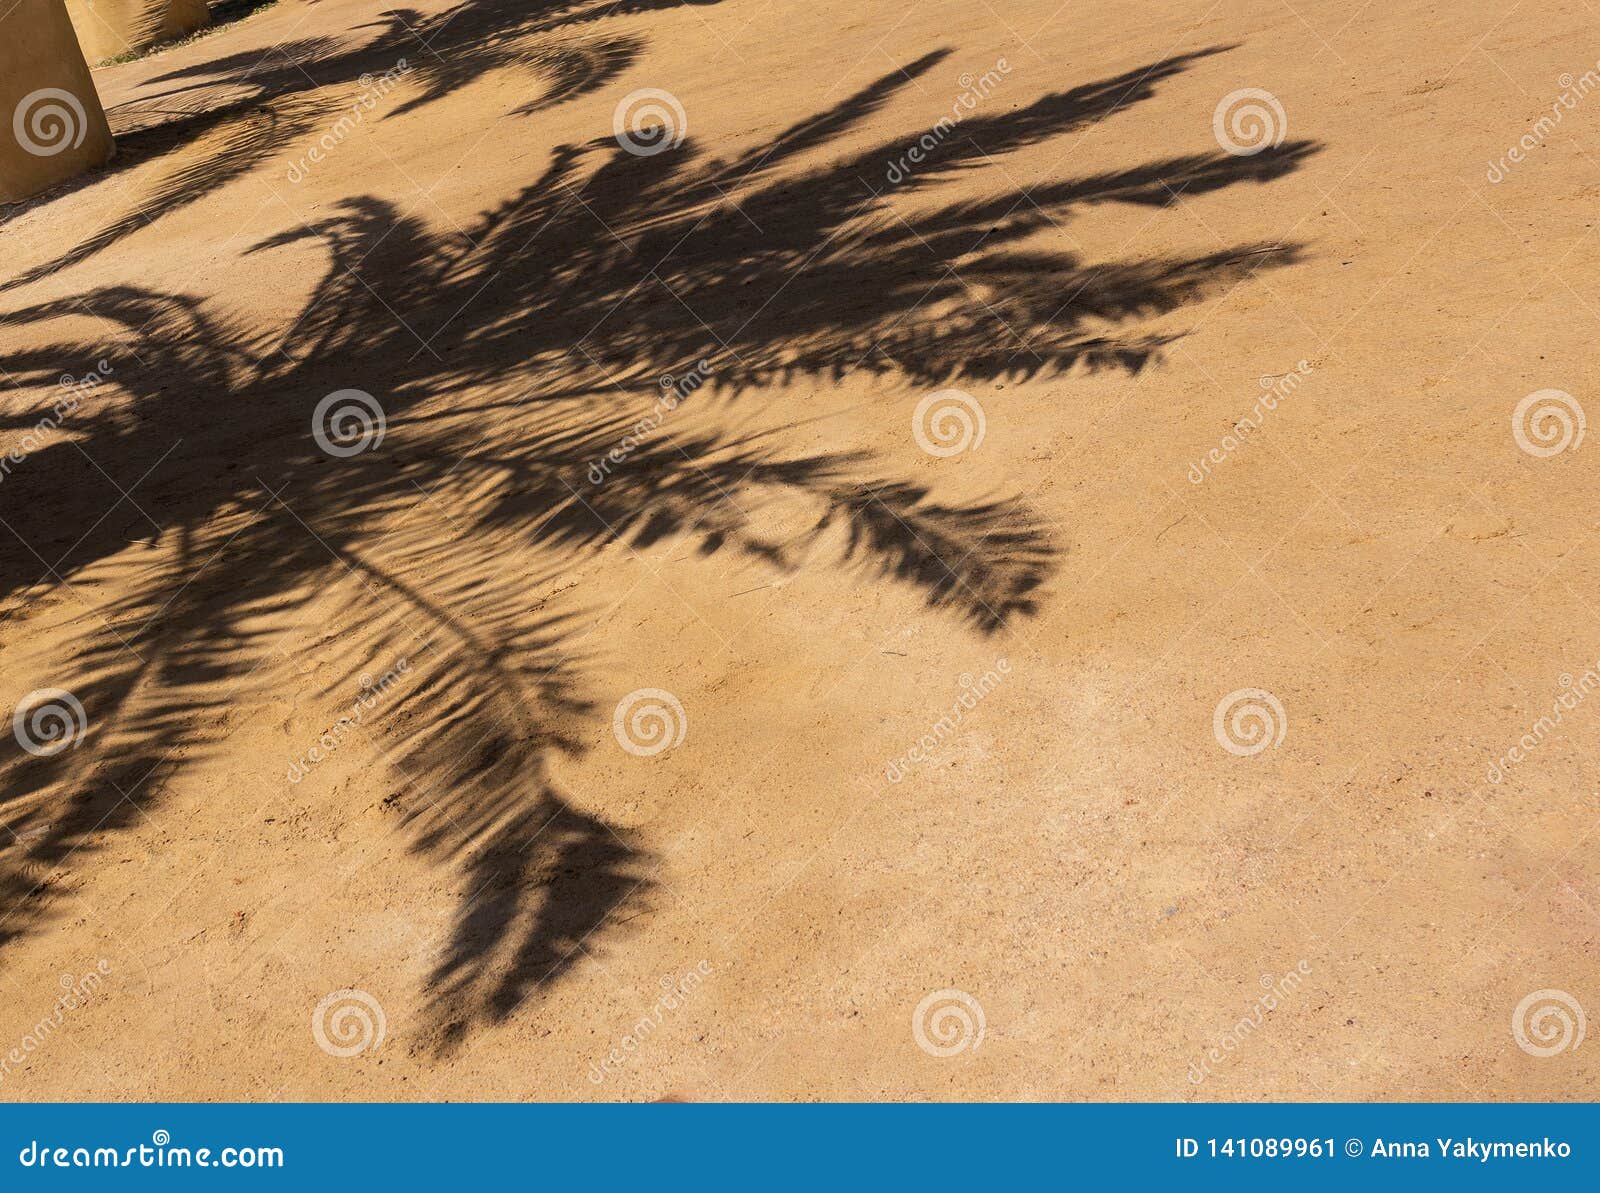 Тени от пальм текст. Тень от пальмы. Тень от пальмы на песке. Тень от пальмы на пляже. Лист пальмы на песке тень.